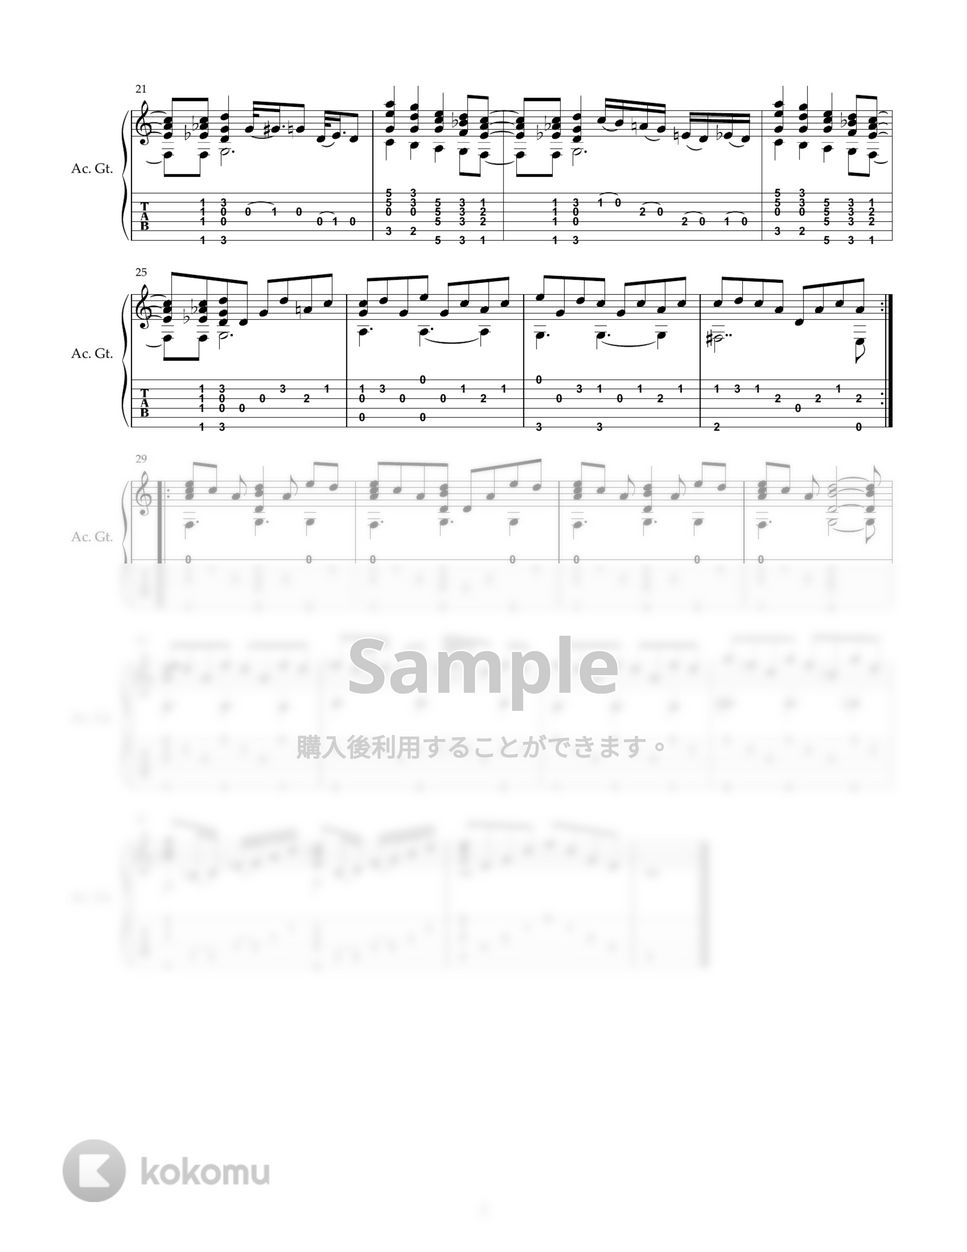 はっぴいえんど - 風をあつめて (ソロギター) by DegicoDegio